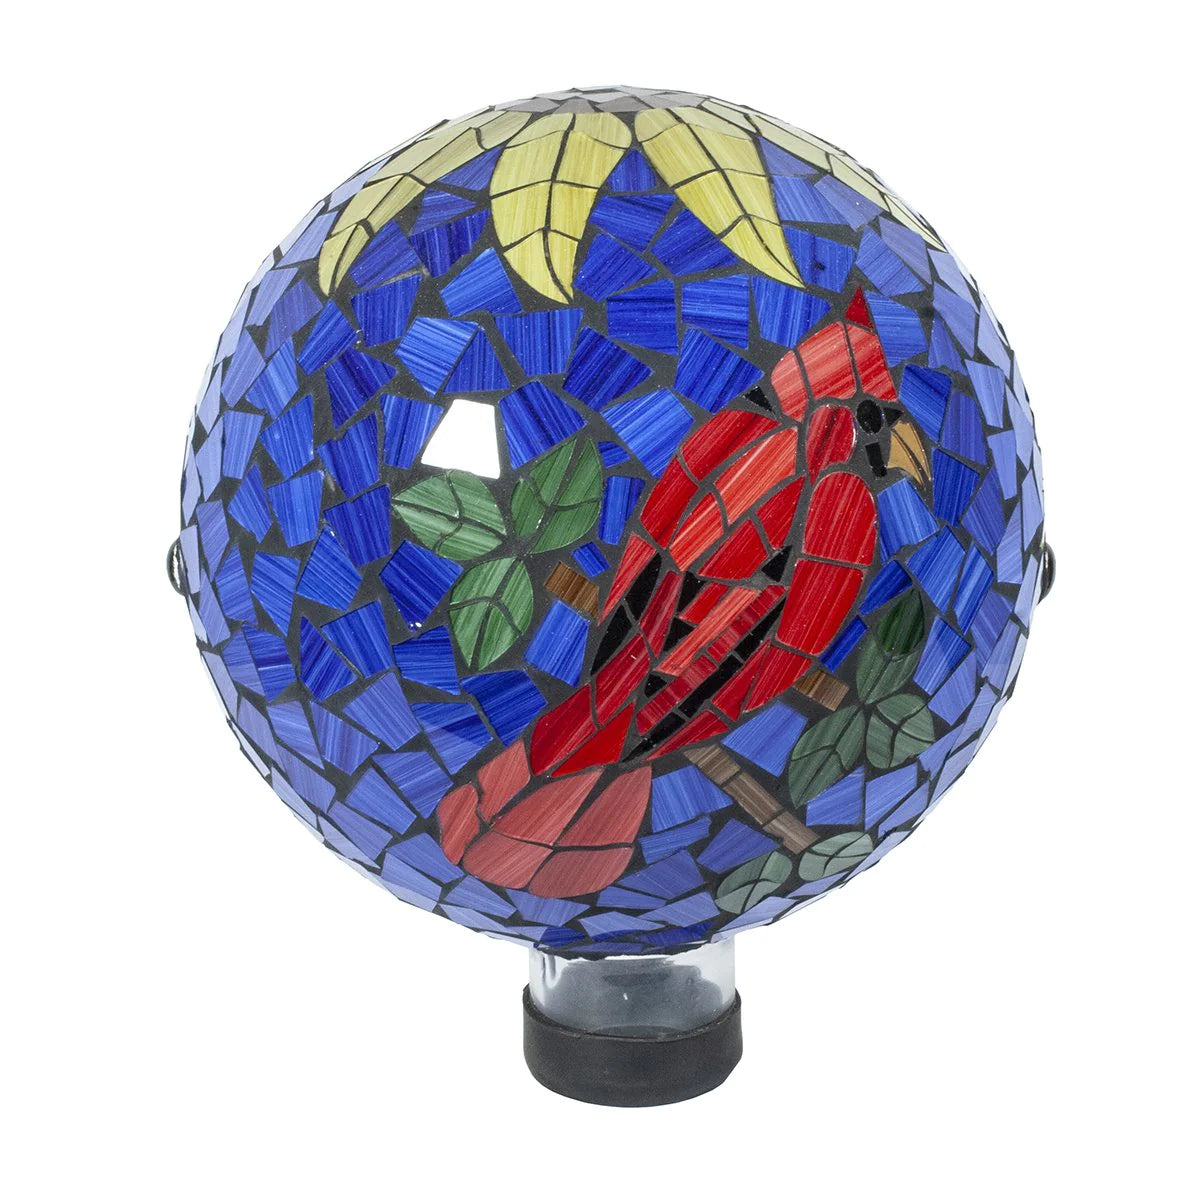 10" Cardinal Mosaic gazing globe